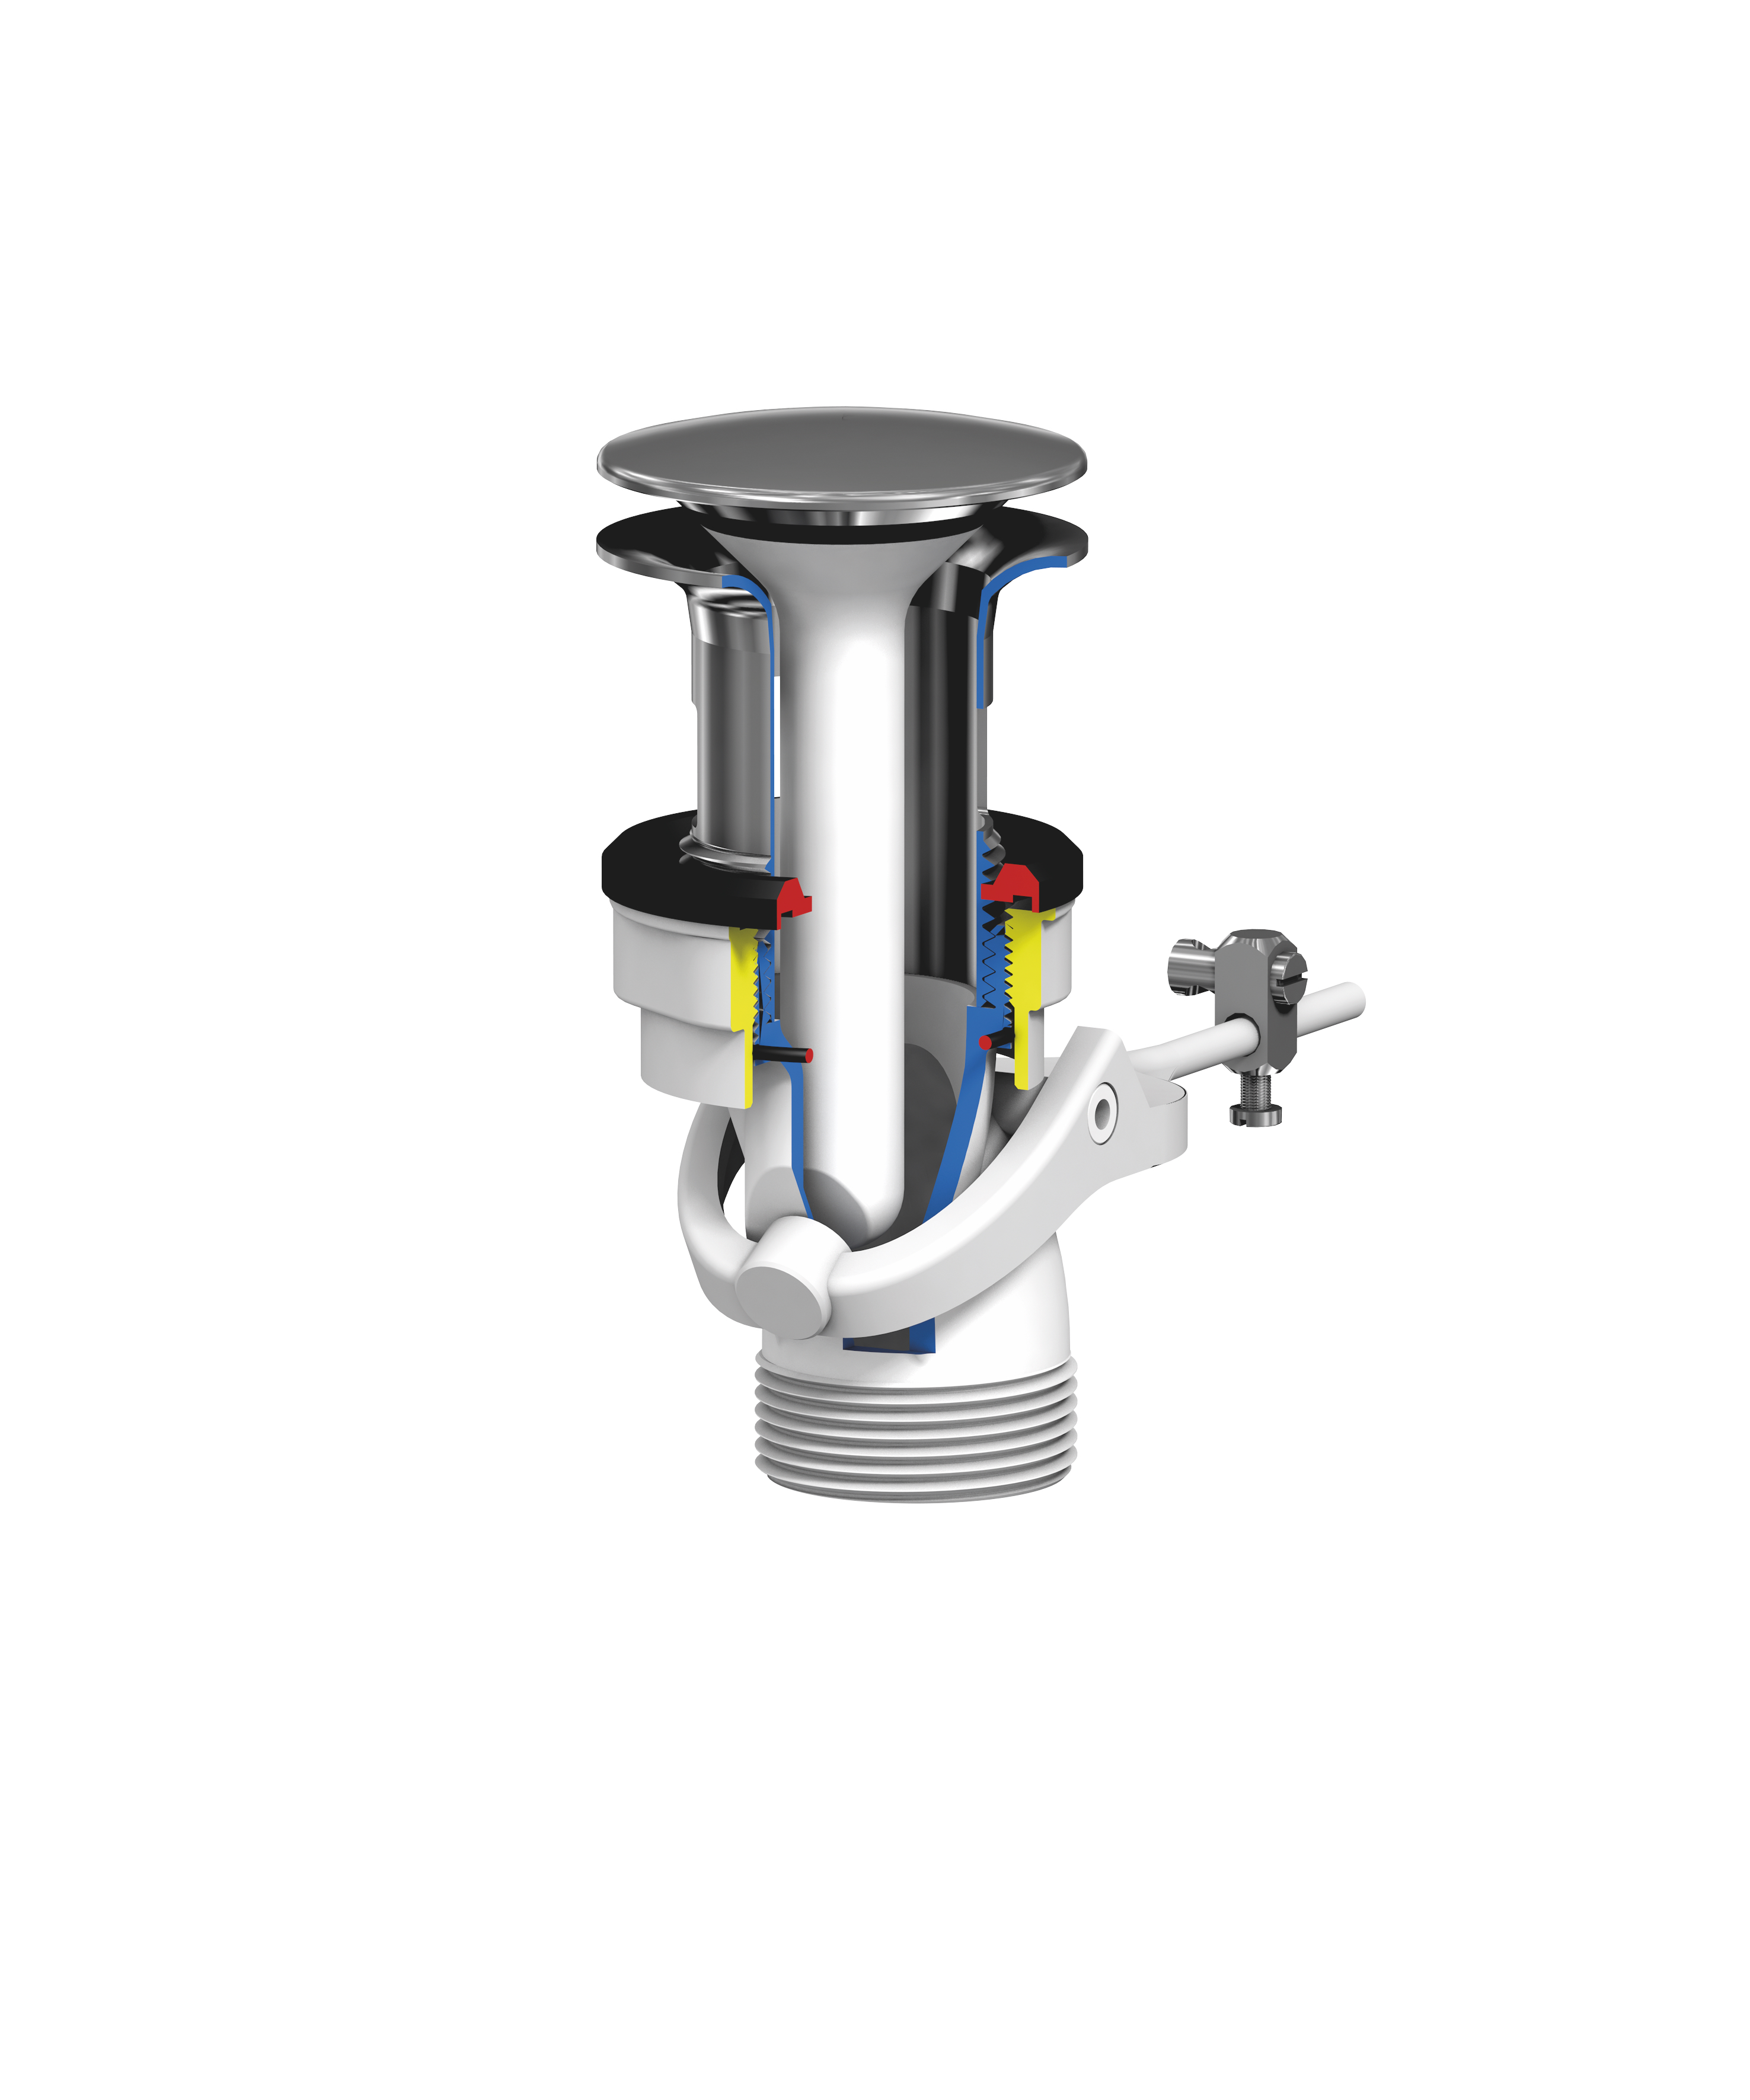 Freilauf Drain valve for washbasin - Washbasin tap, Freilauf GmbH & Co. KG